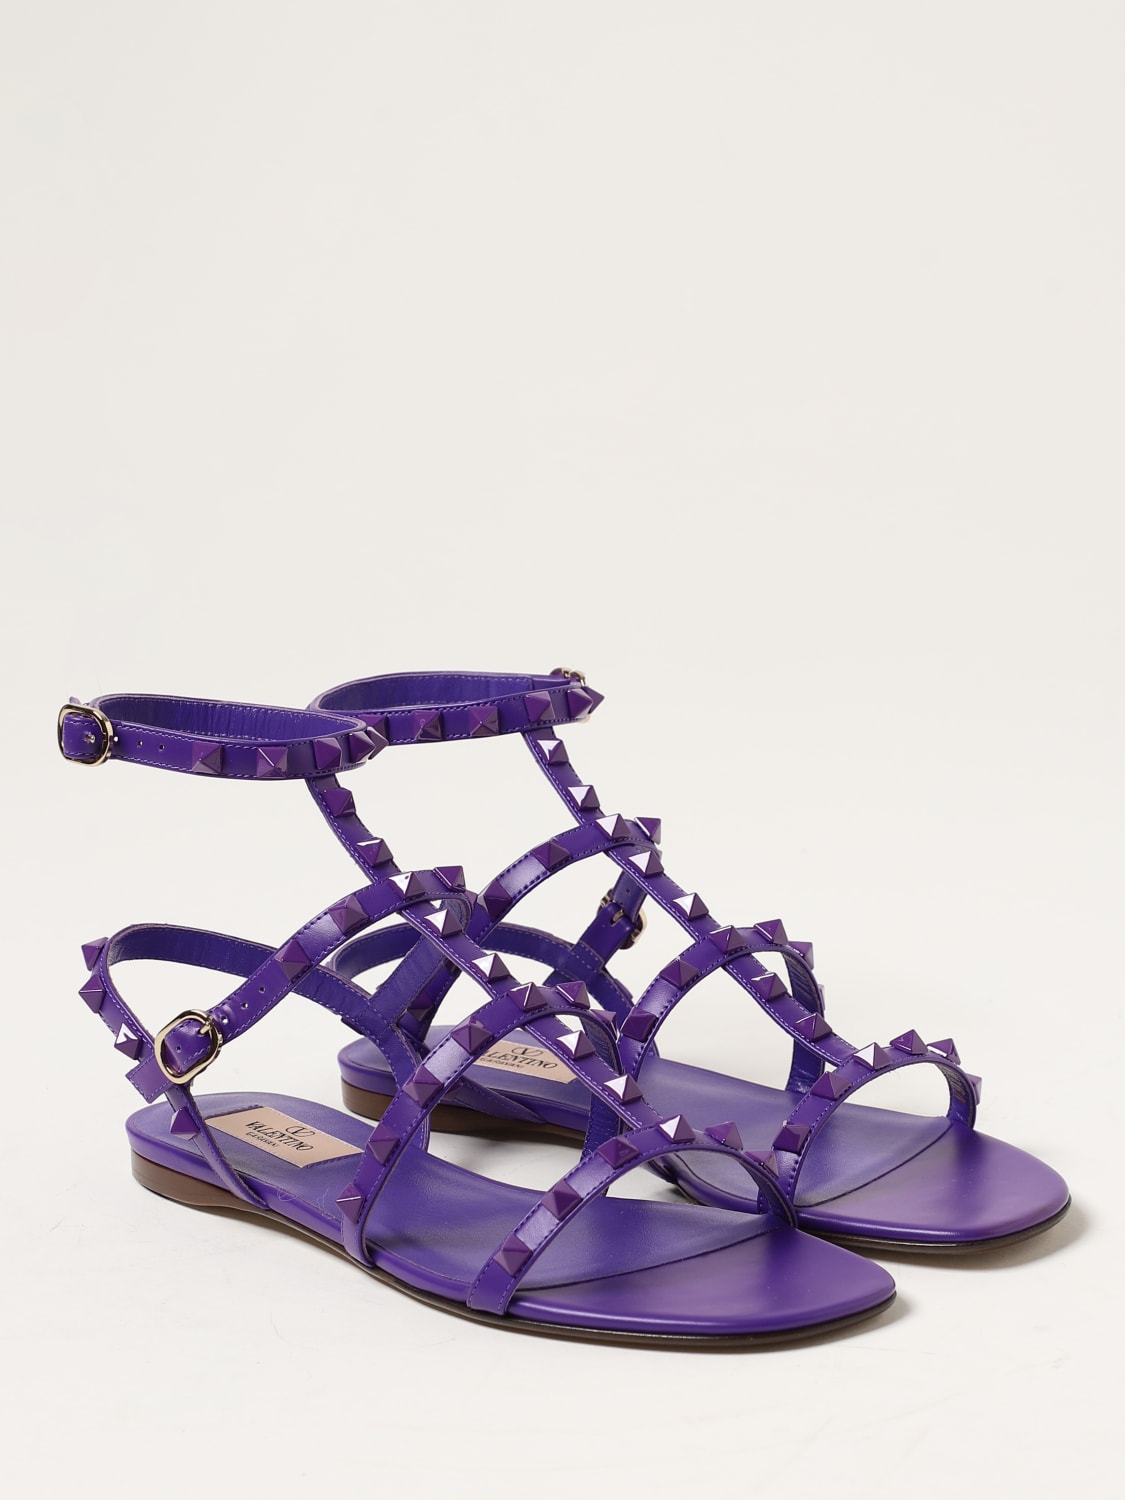 Valentino Garavani Women's Rockstud Flat Sandals